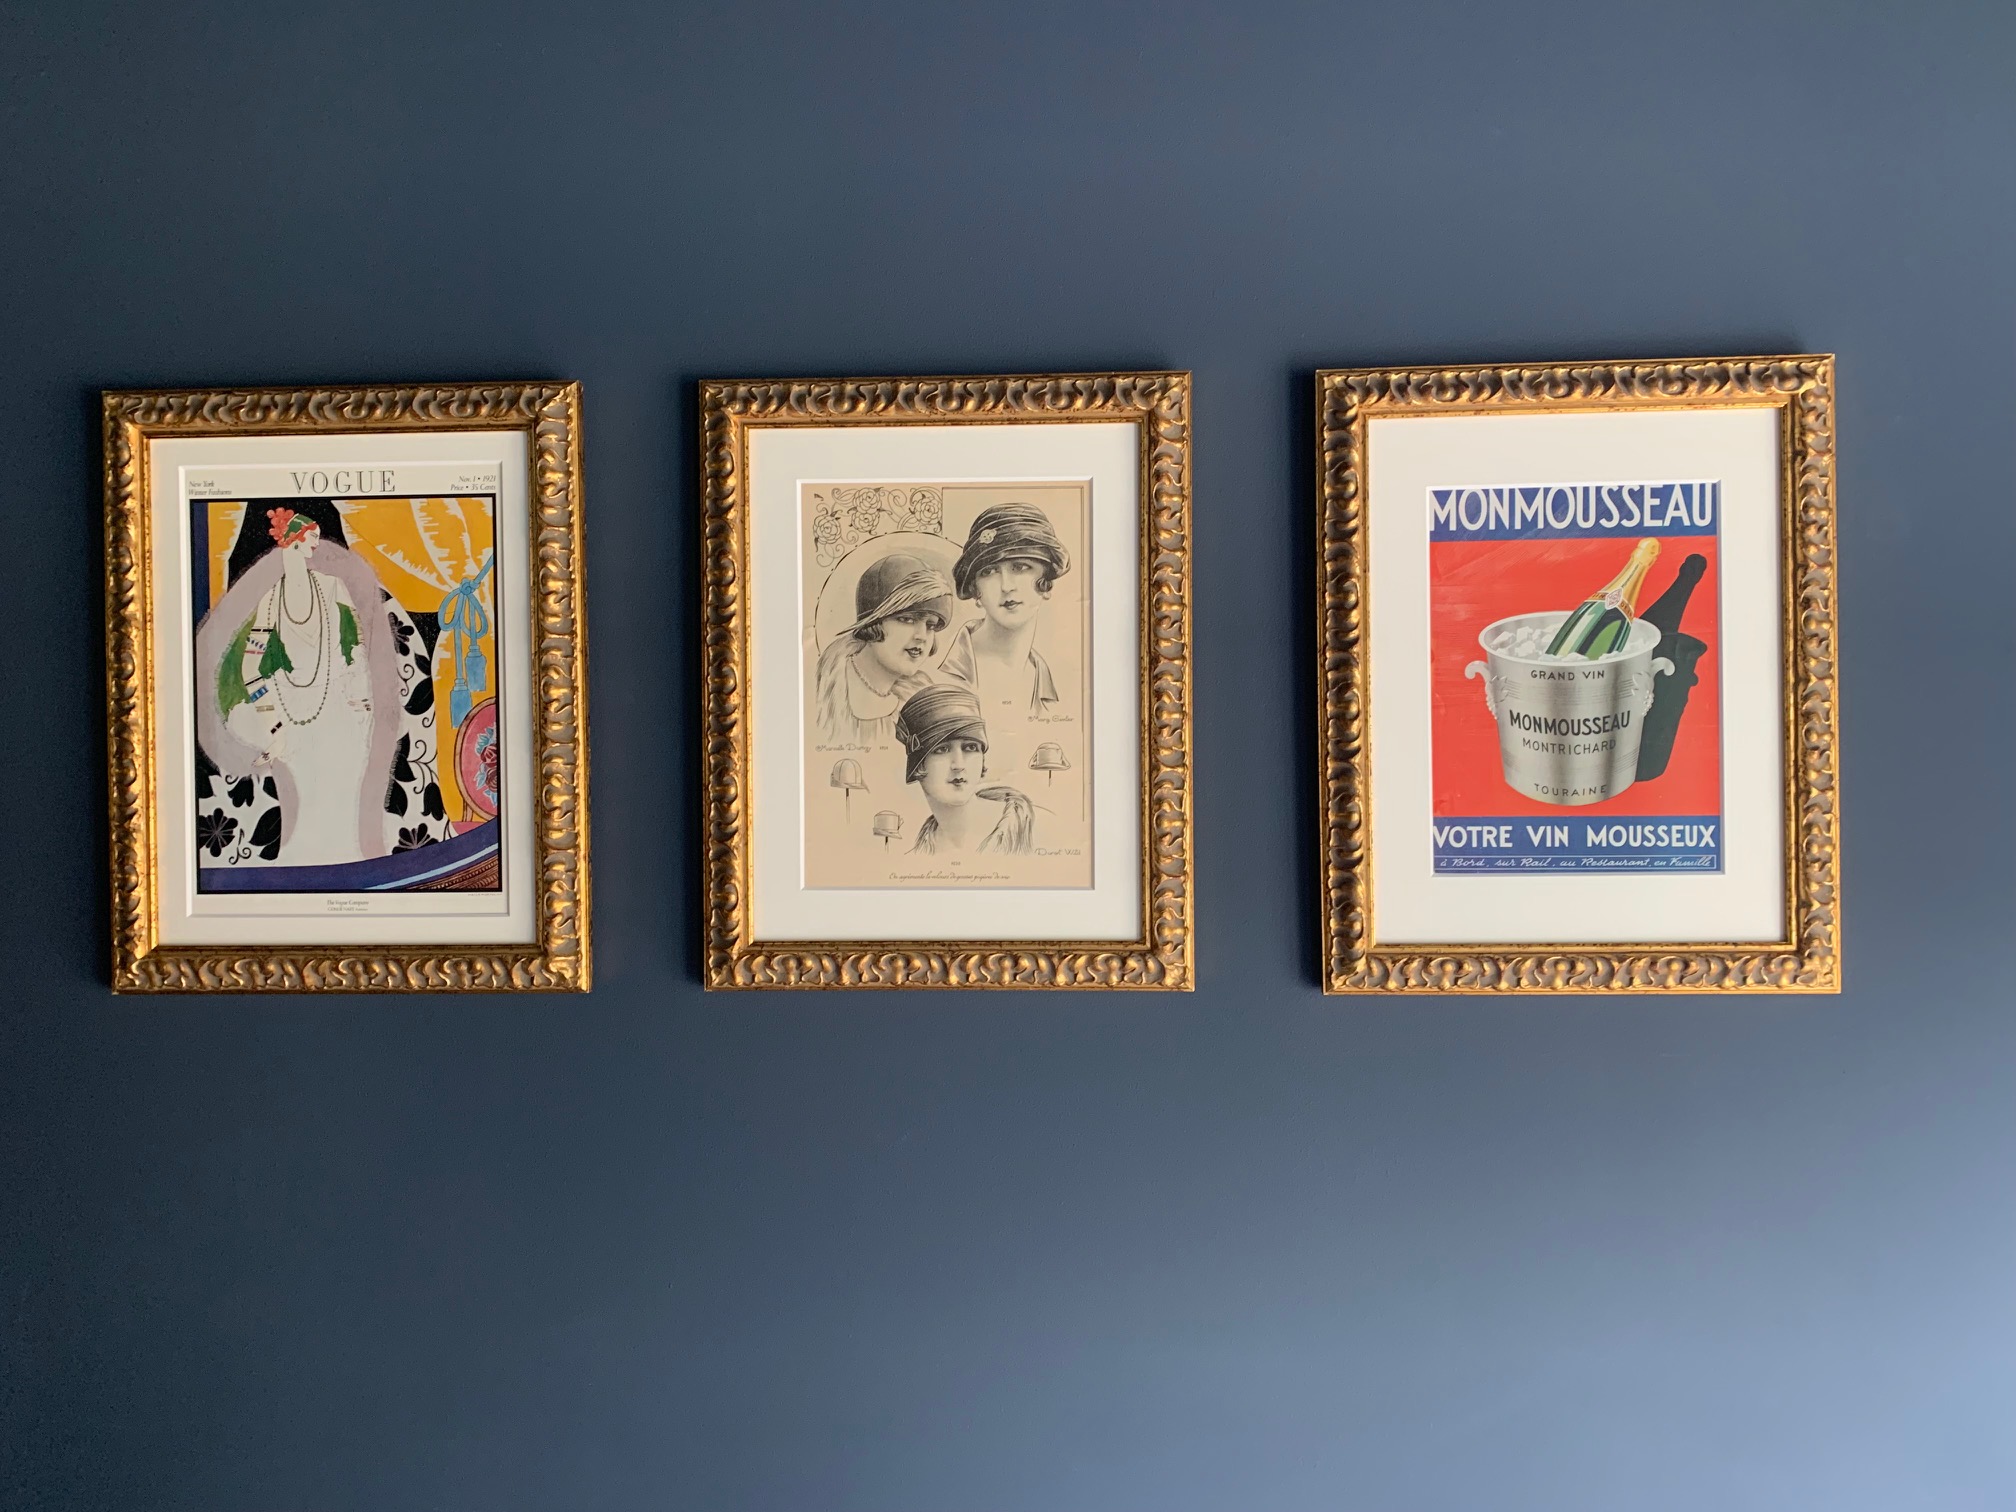 I sovrummet hänger dessa gamla affischer från 30-talet